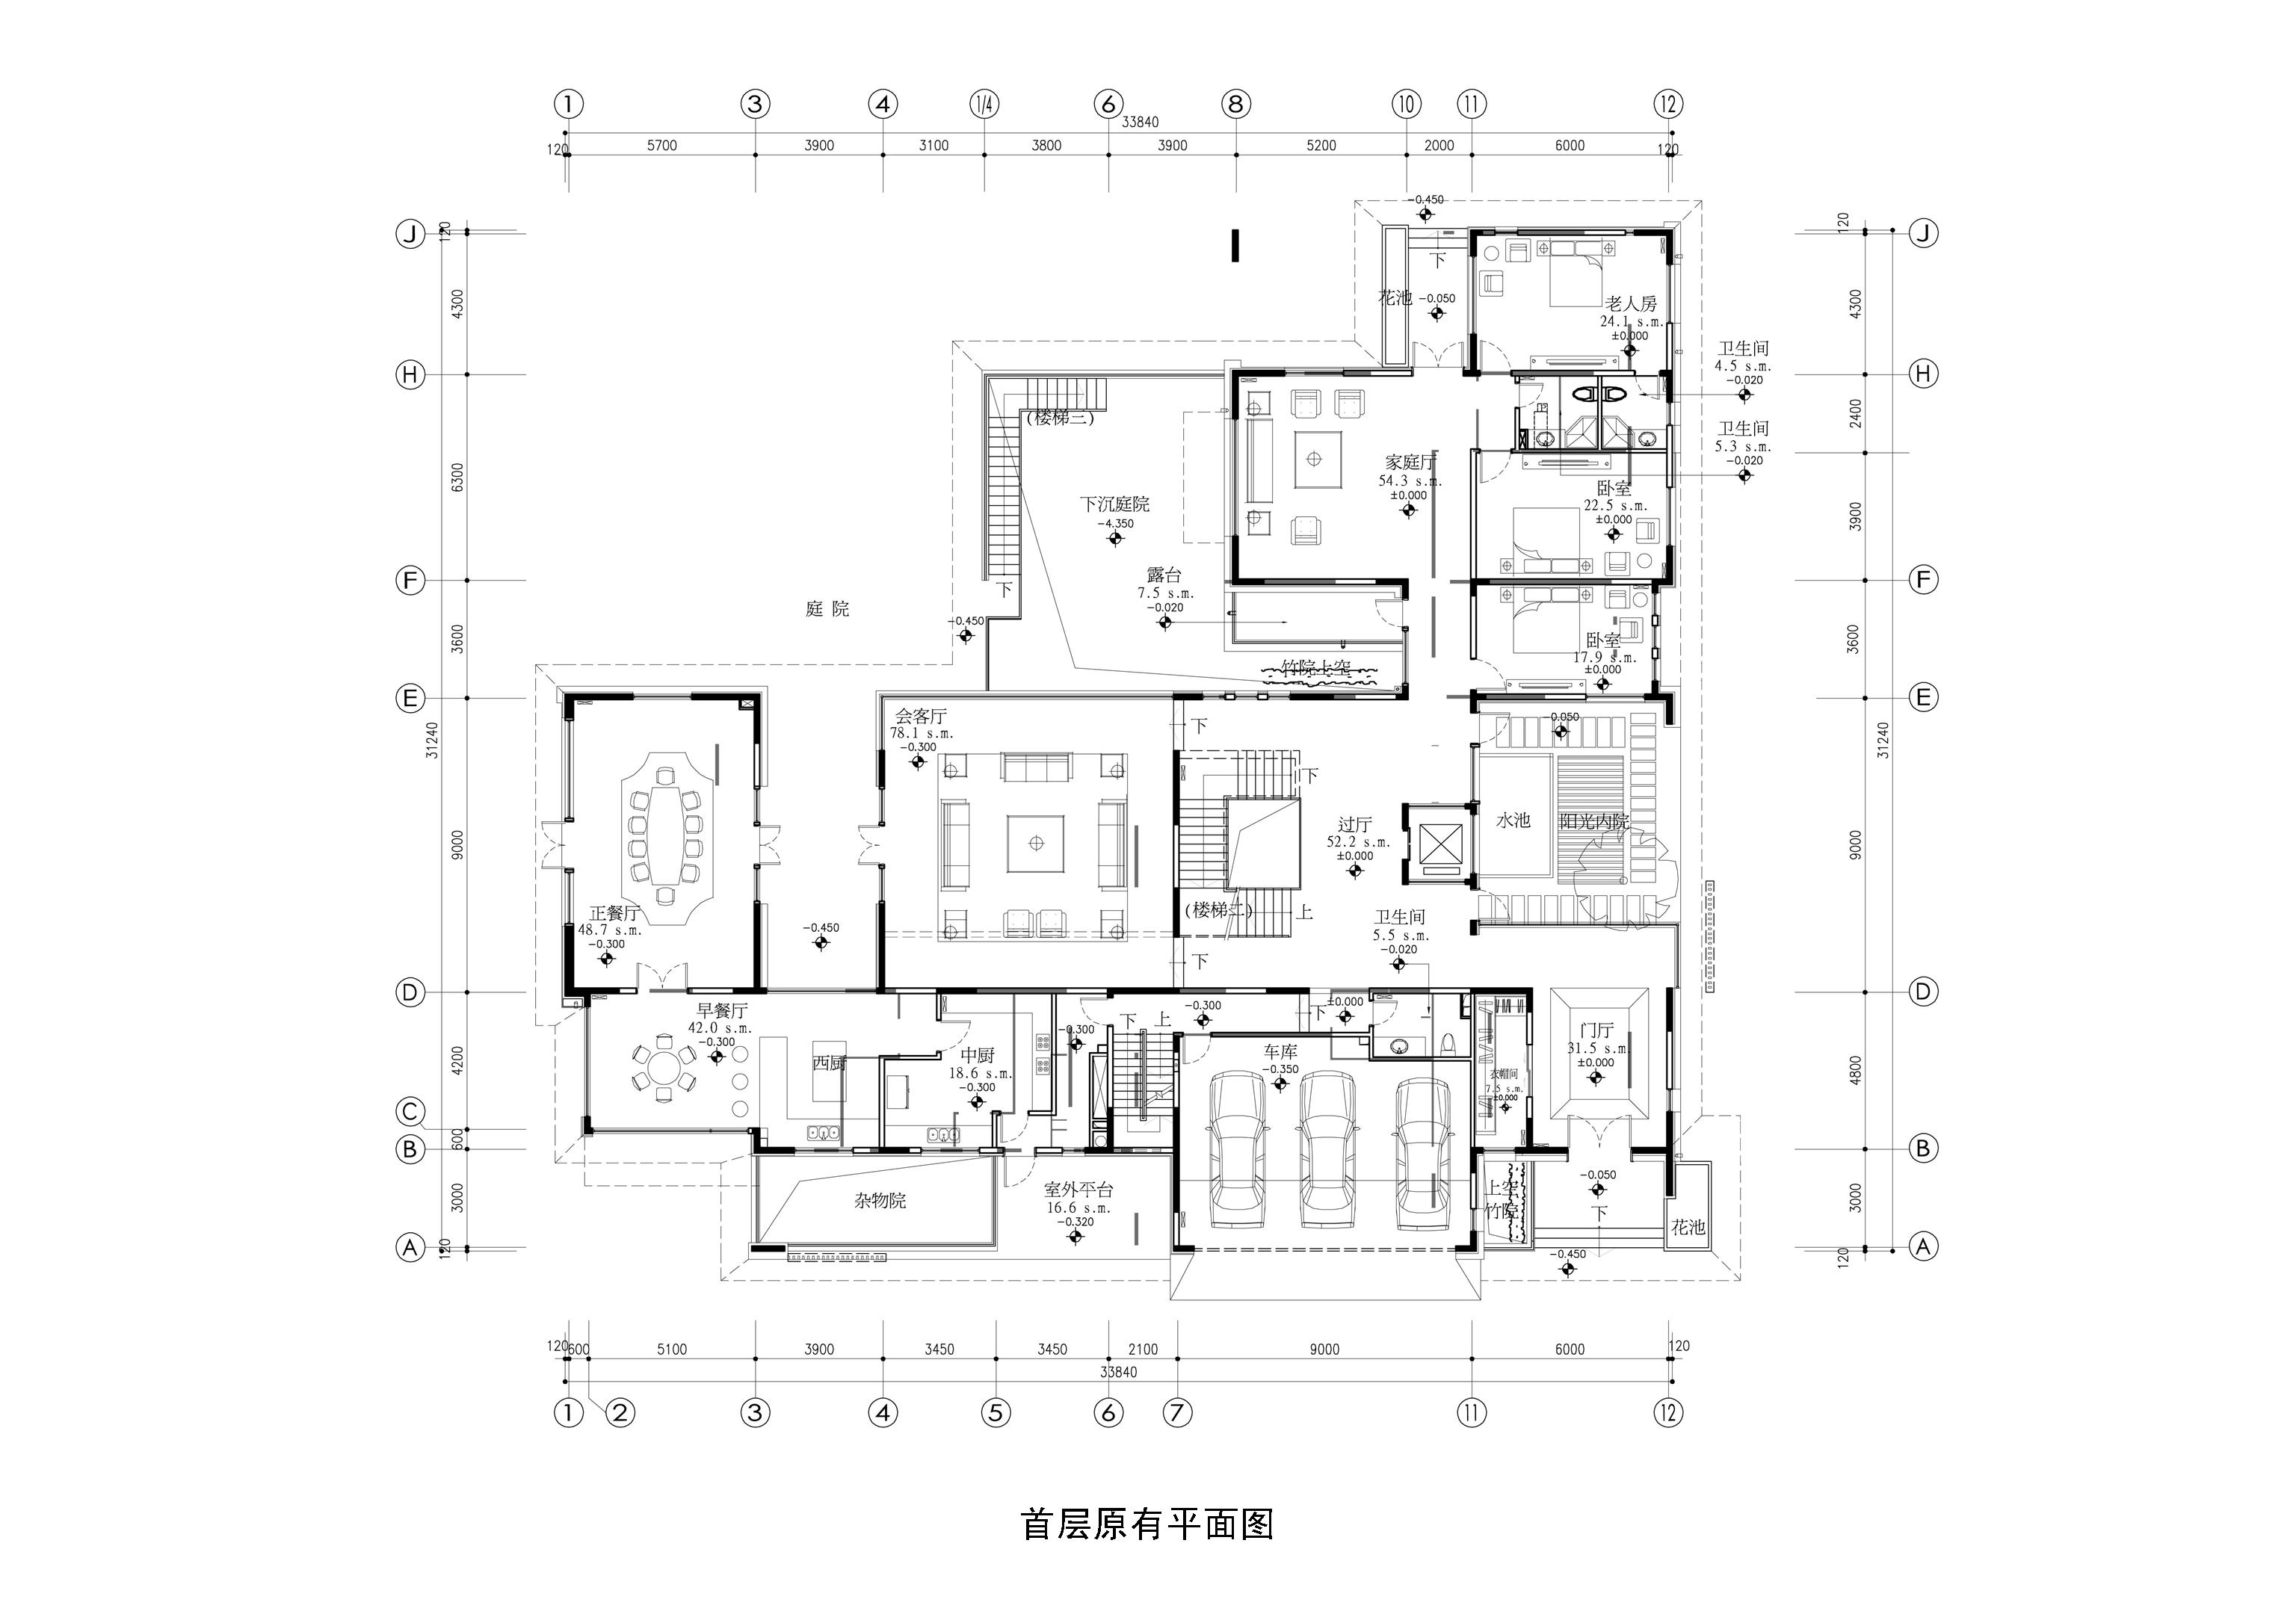 【北京】富力湾湖心岛两层别墅A户型样板房概念设计方案JPG